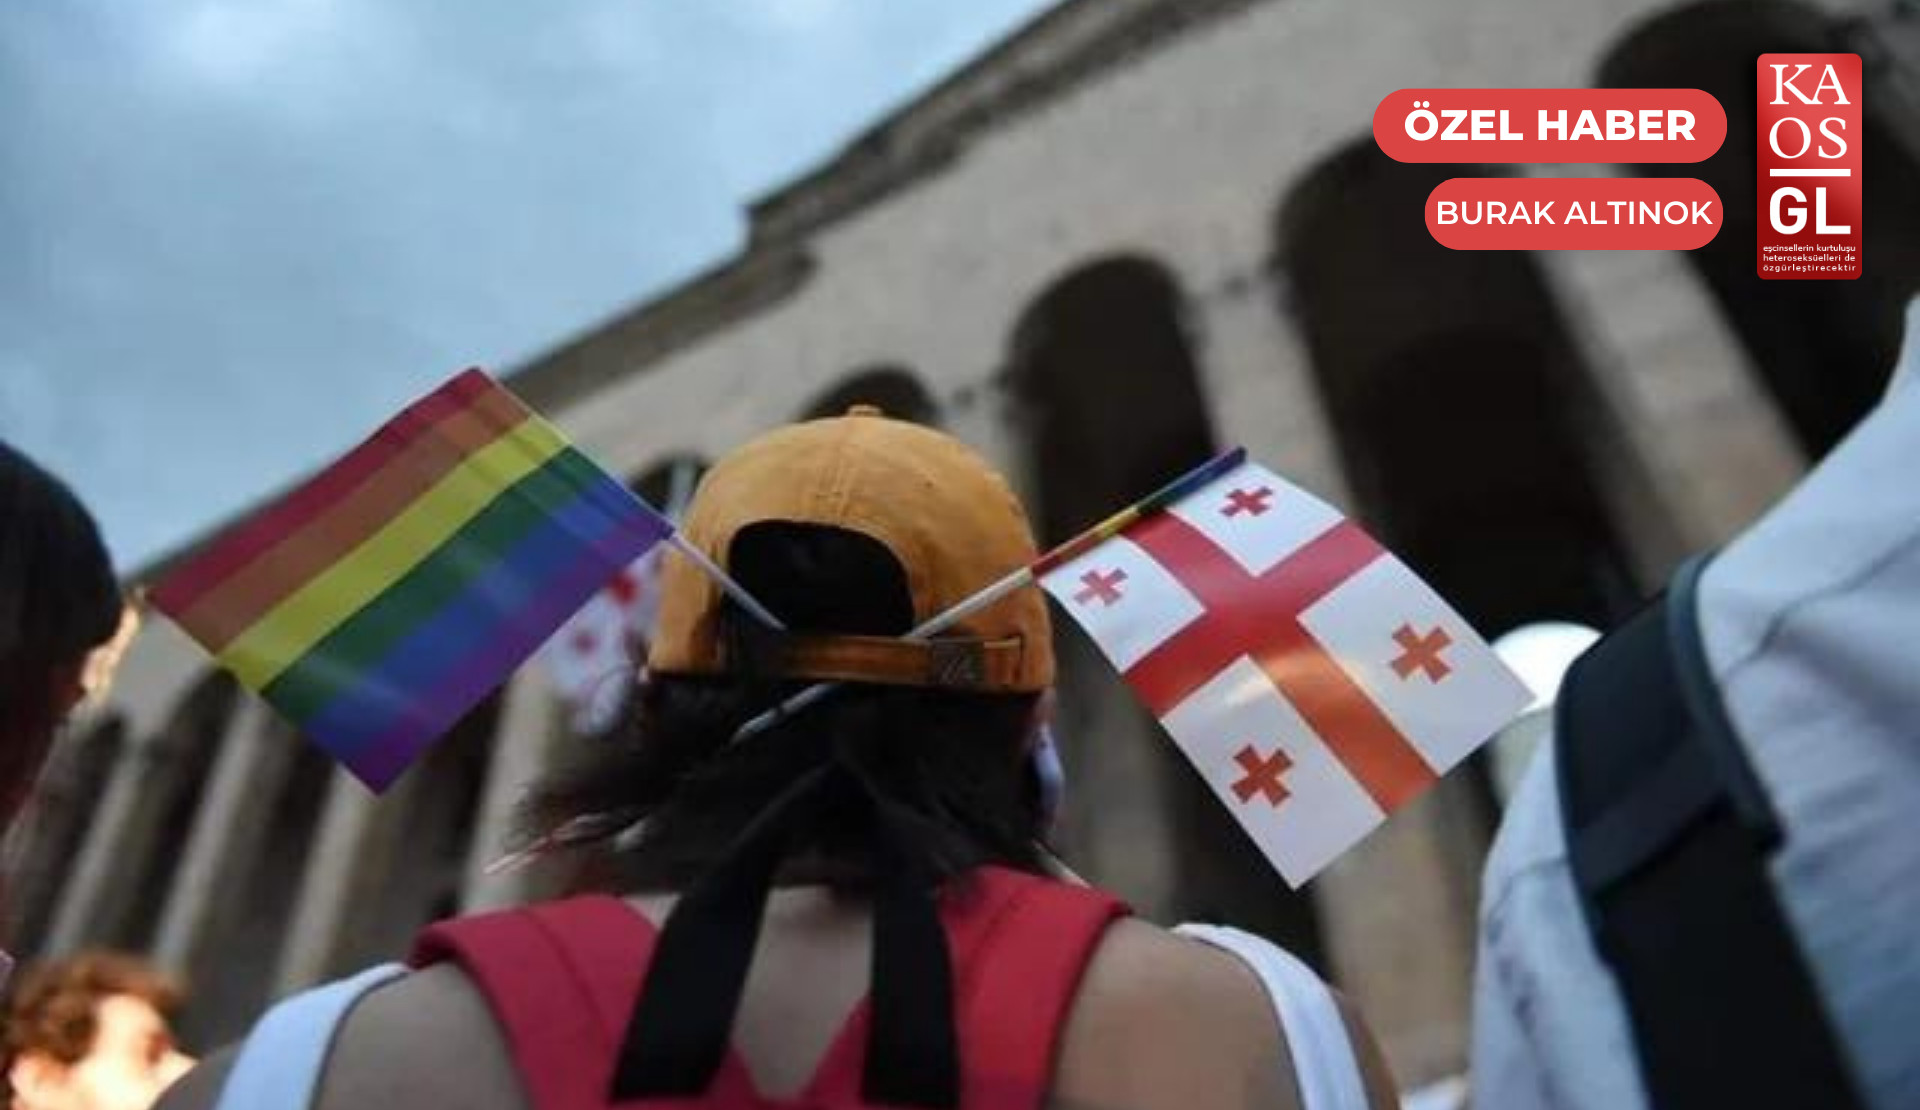 Gürcistan, ‘Ulusal İnsan Hakları Eylem Planı’nı yayımladı: LGBTİ+’lara yer yok Kaos GL - LGBTİ+ Haber Portalı